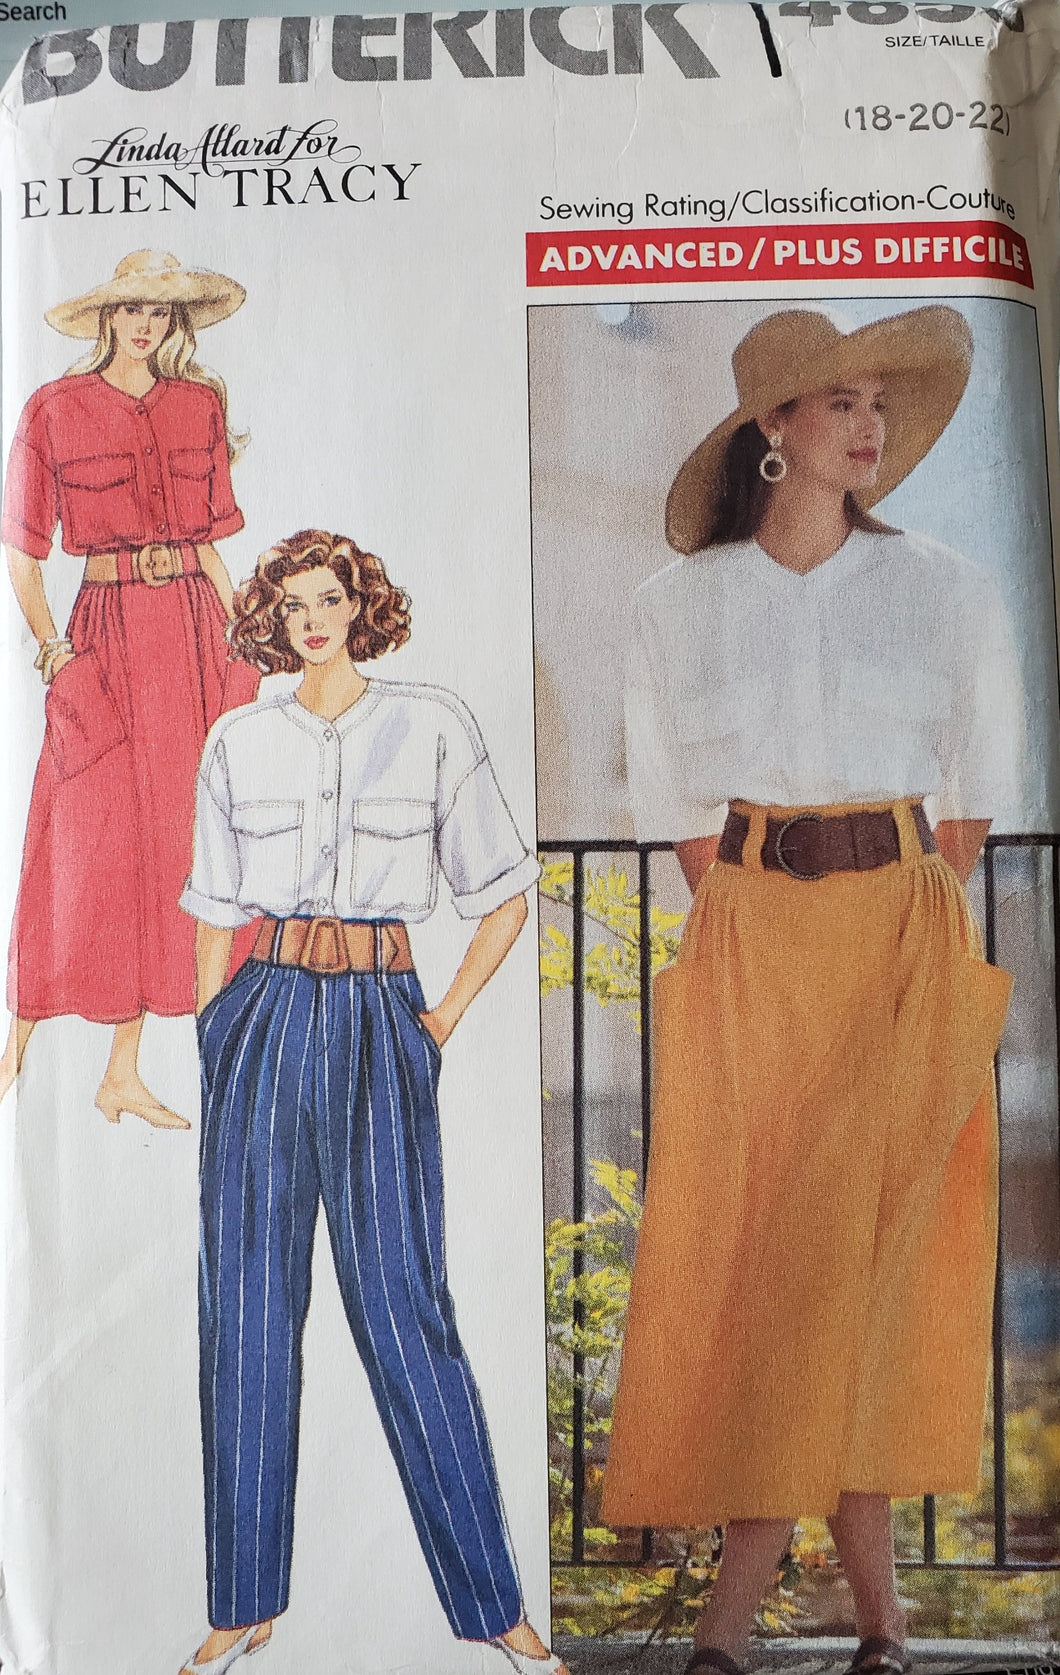 Vintage Butterick Pattern 4856, UNCUT, Designer Ellen Tracy, Misses Dress, Pants, Tops, Size 18-20-22, Rare